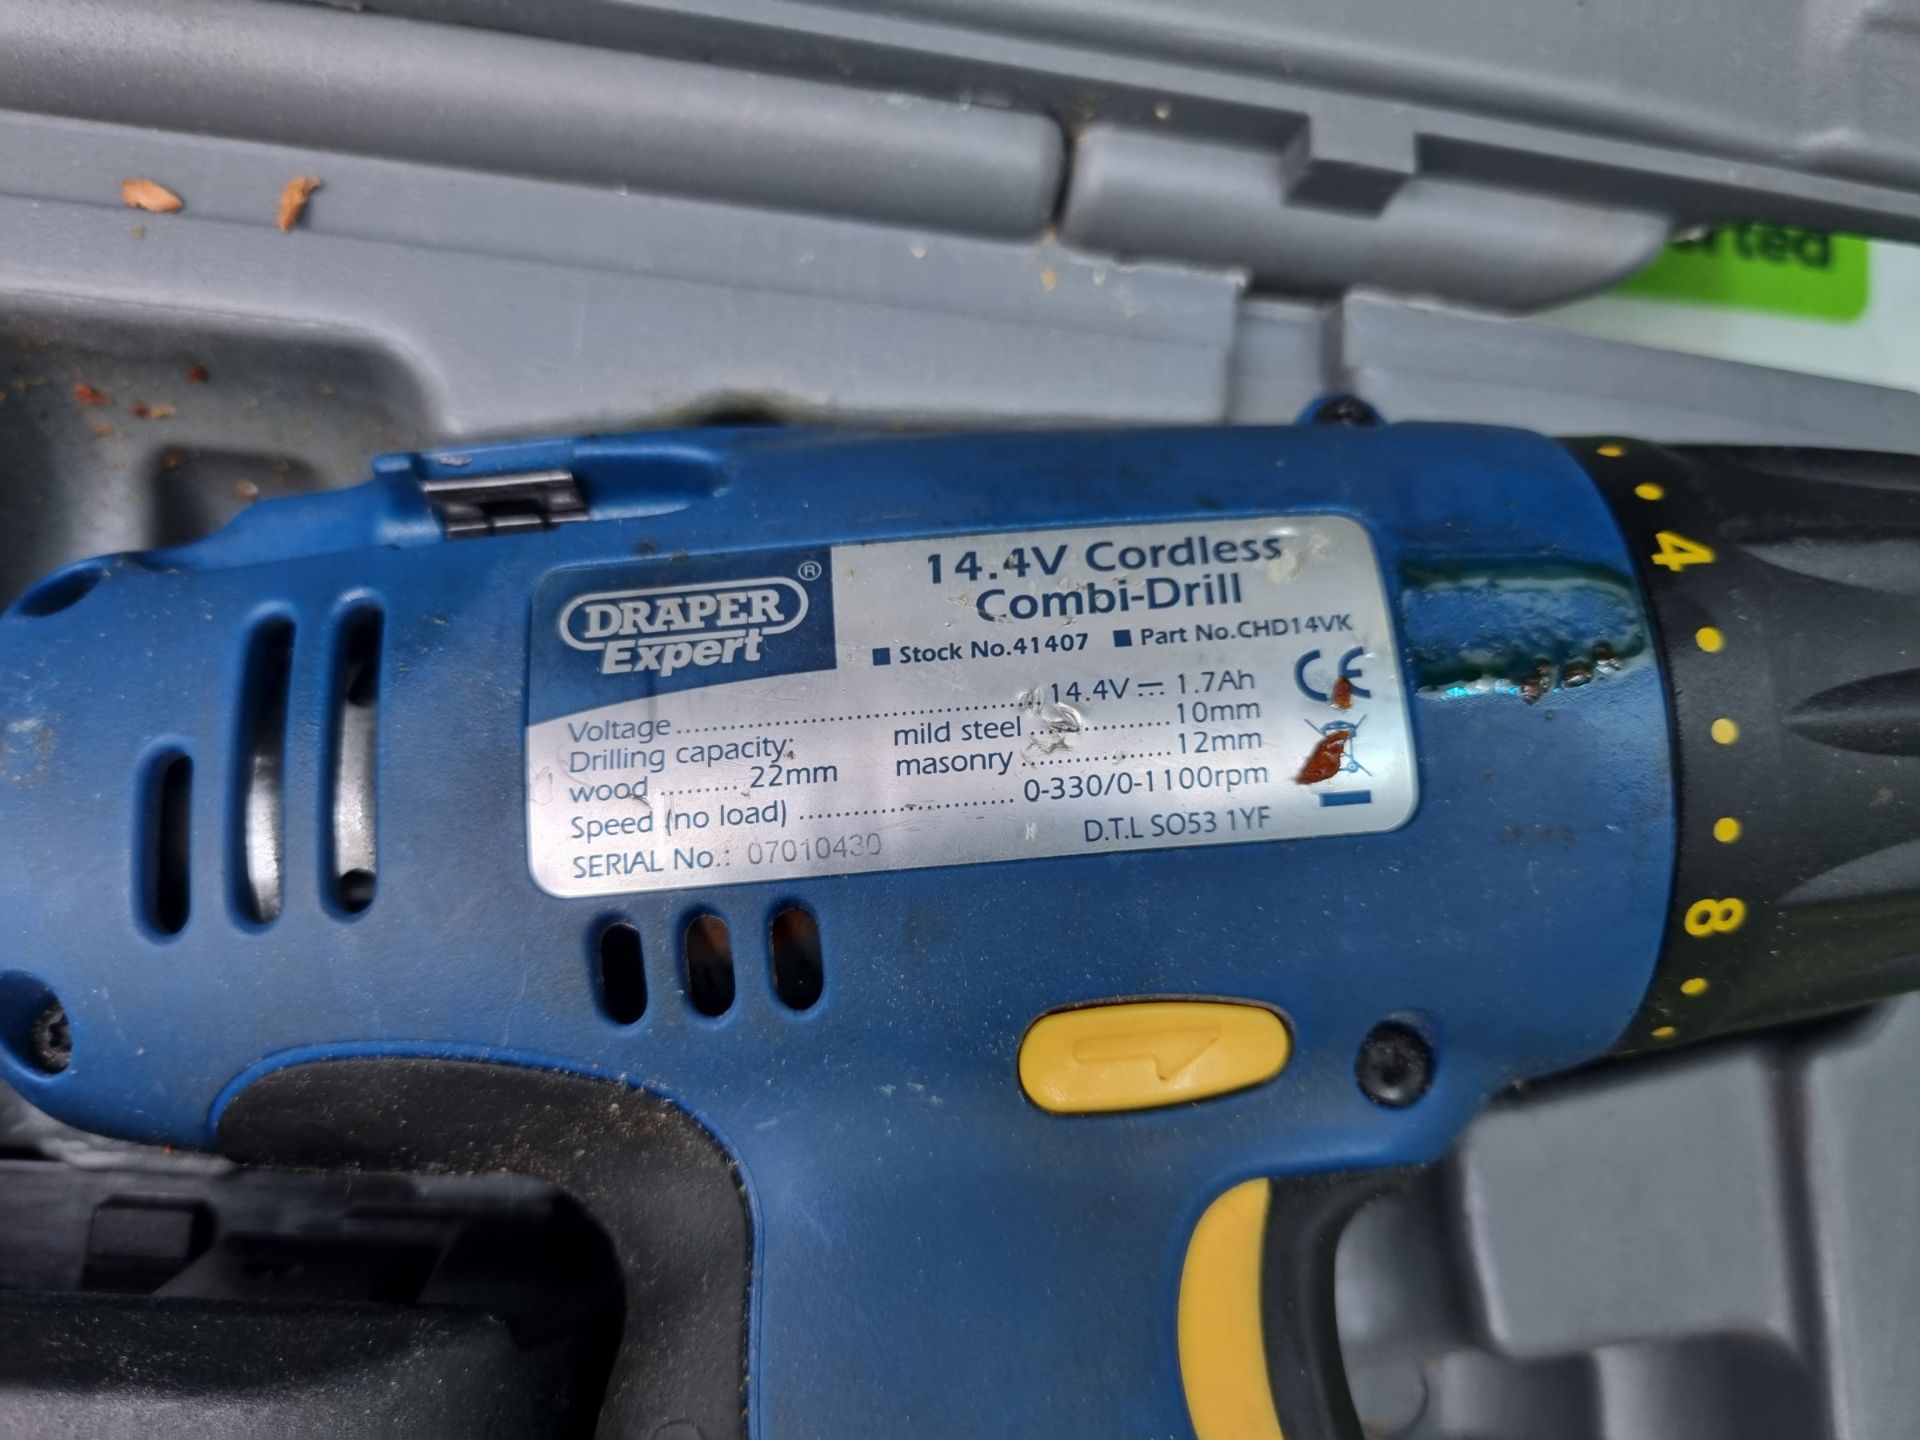 Draper Expert CHD14VK cordless drill, charger, battery + case 14.4V - Image 4 of 4